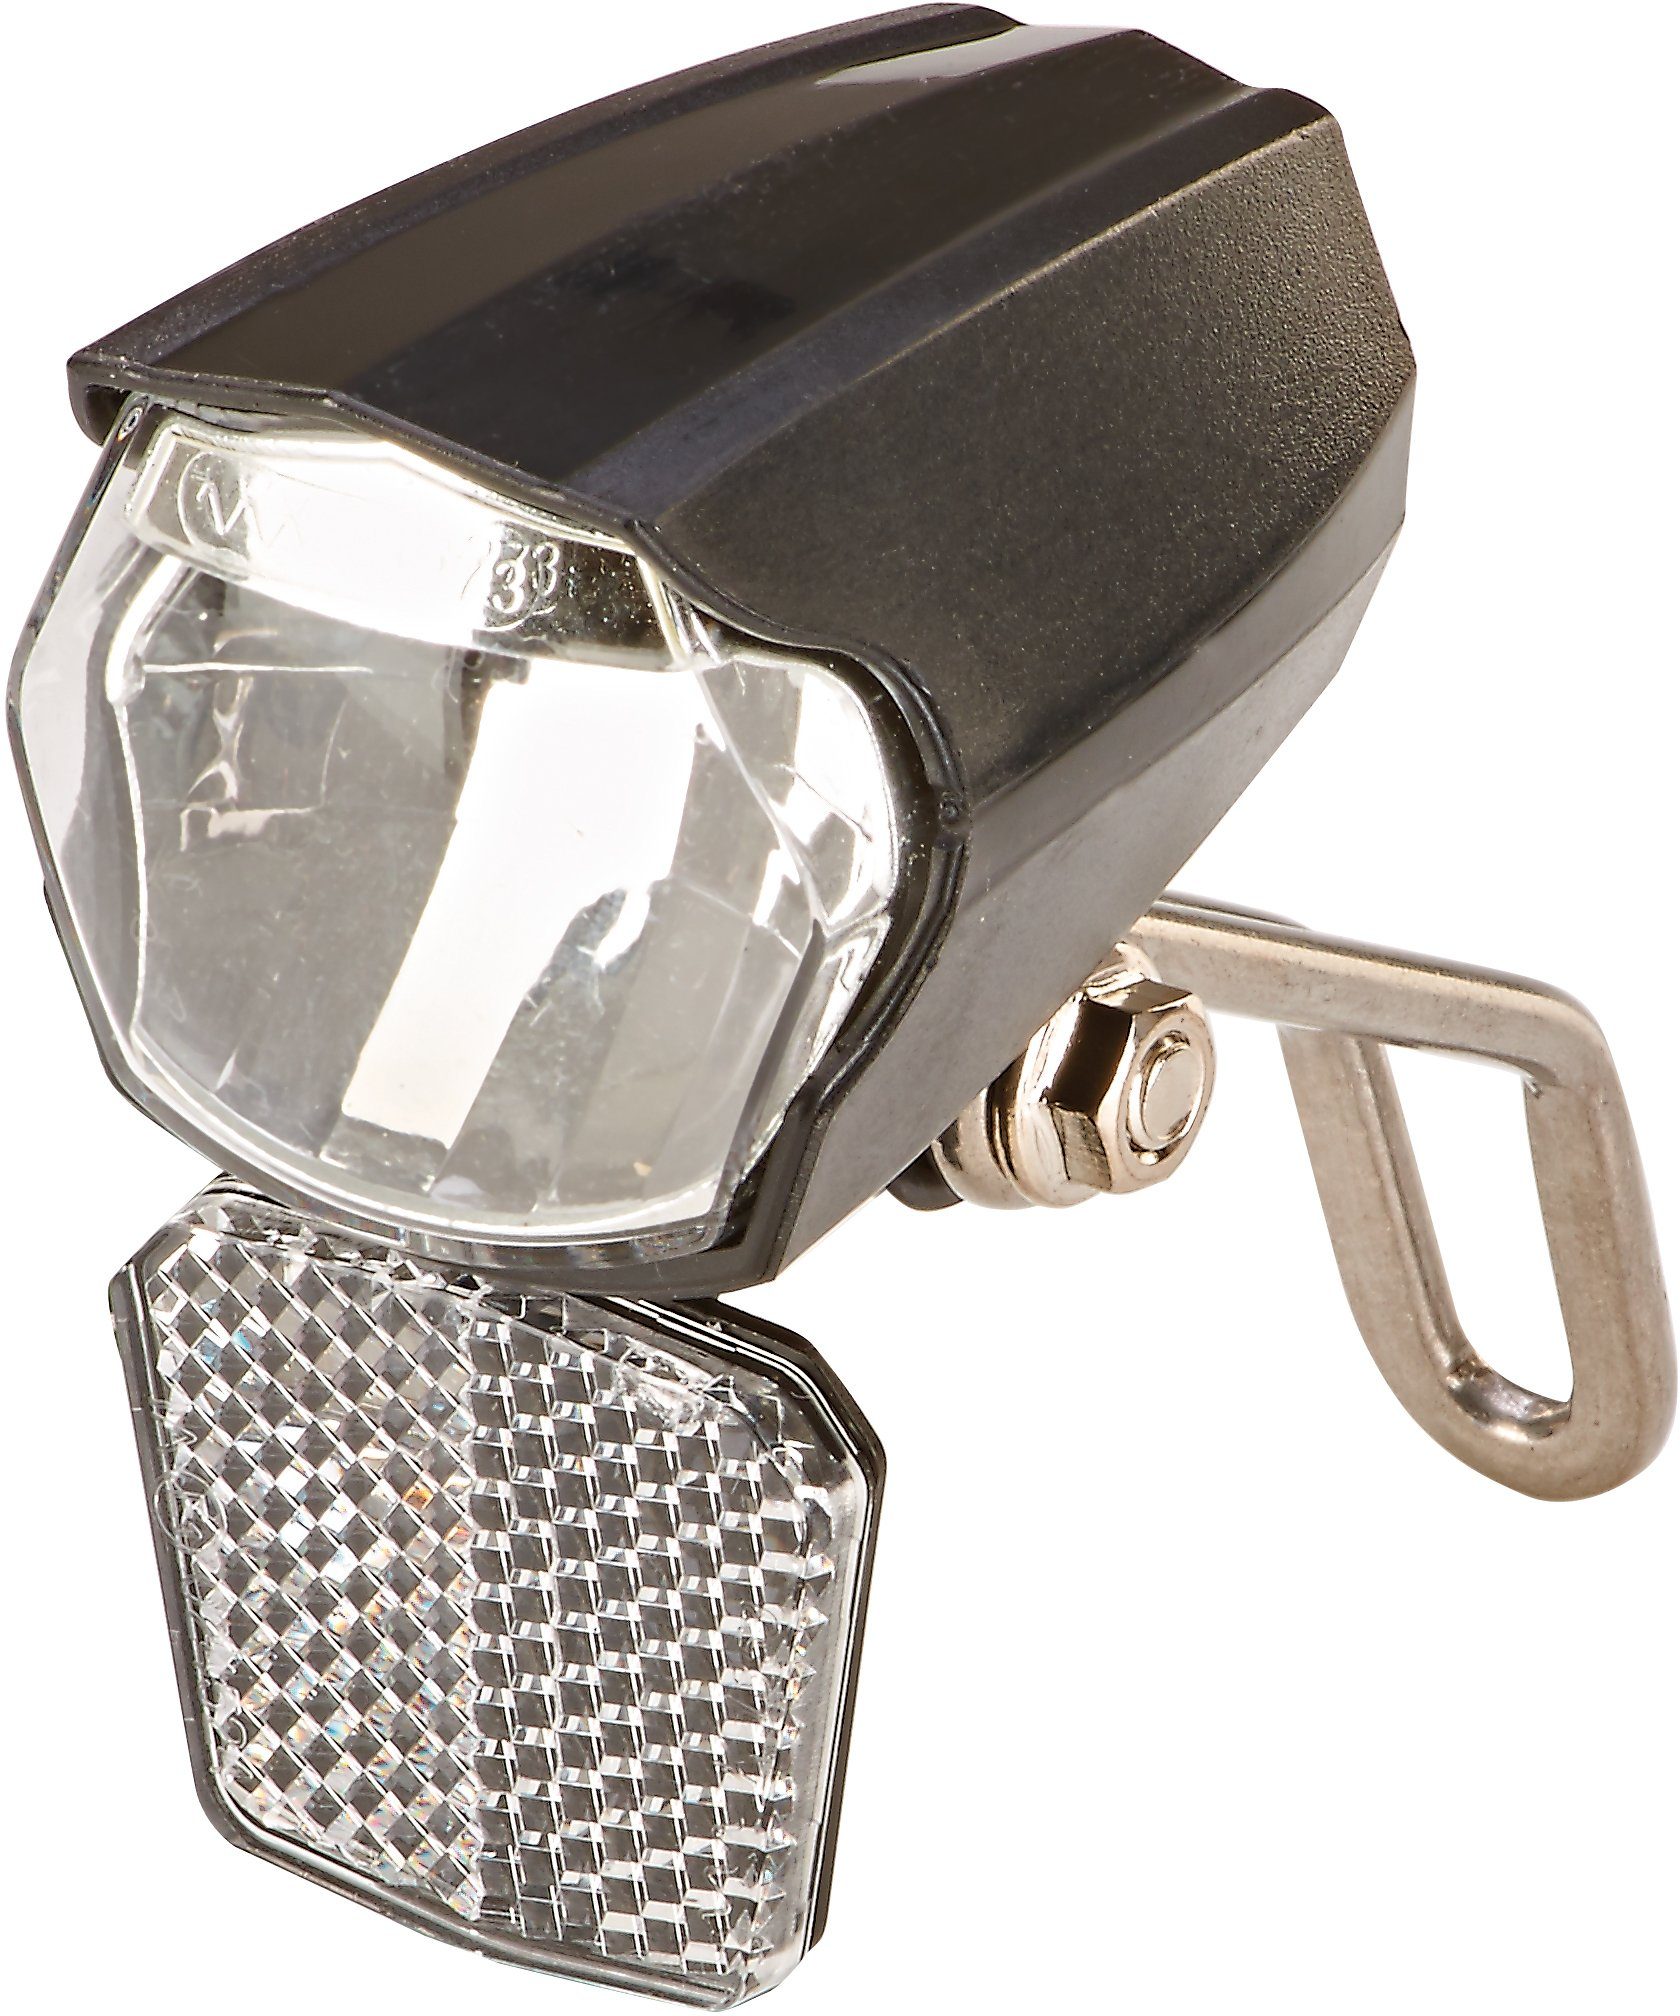 LED Fahrrad Front Scheinwerfer Lampe 15 LUX Nabendynamo Beleuchtung v,  11,99 €